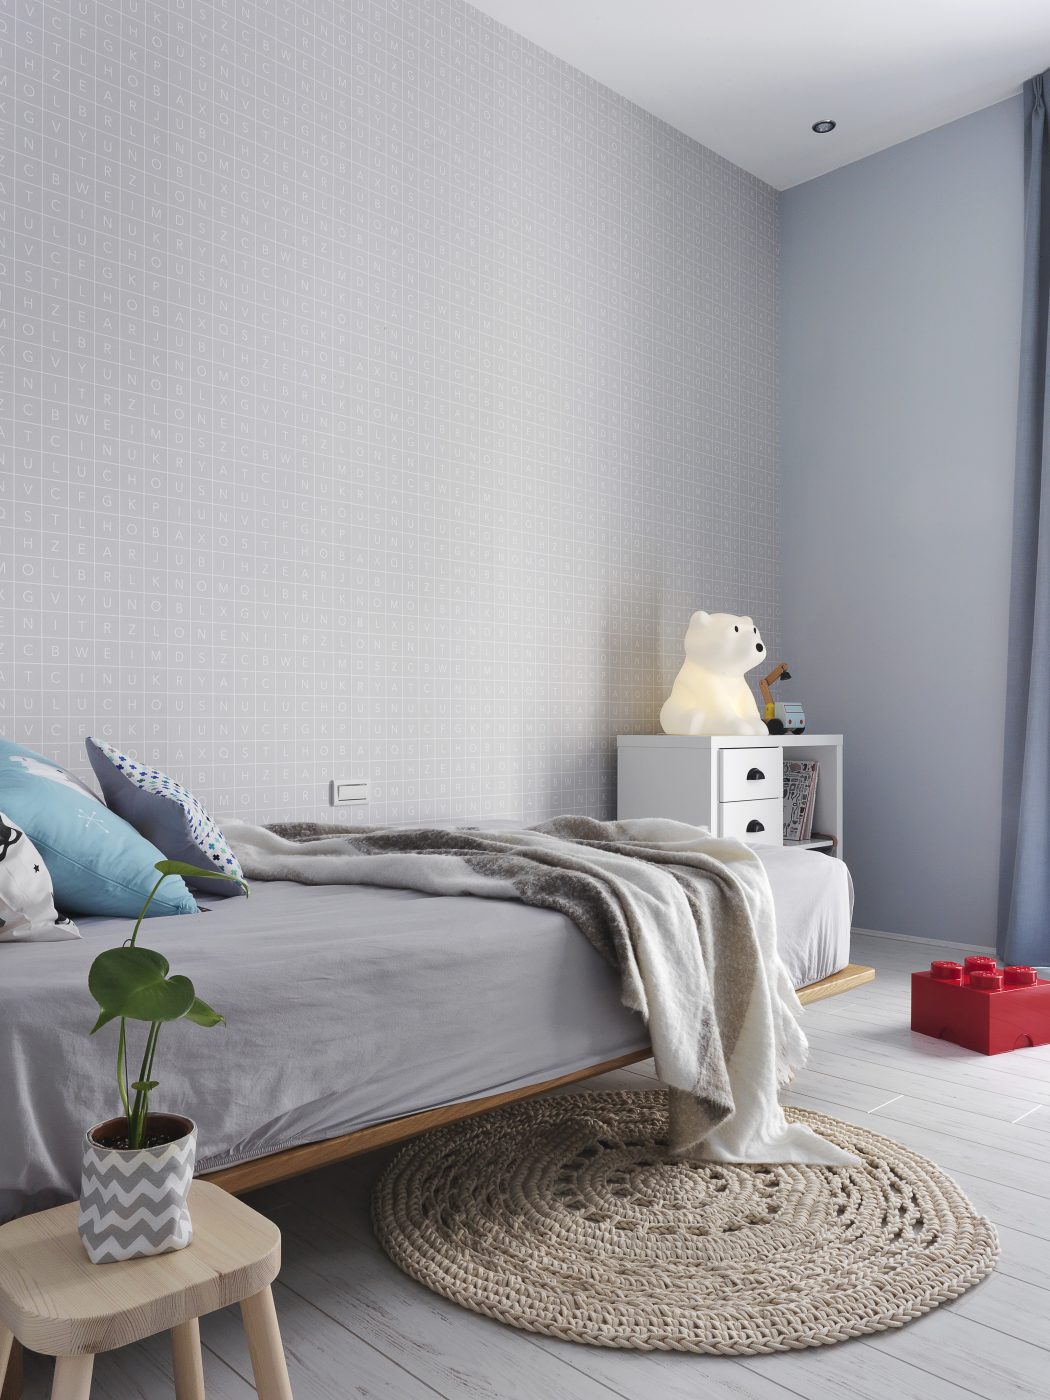 décoration appartement gris perle et blanc idée chambre d'enfant